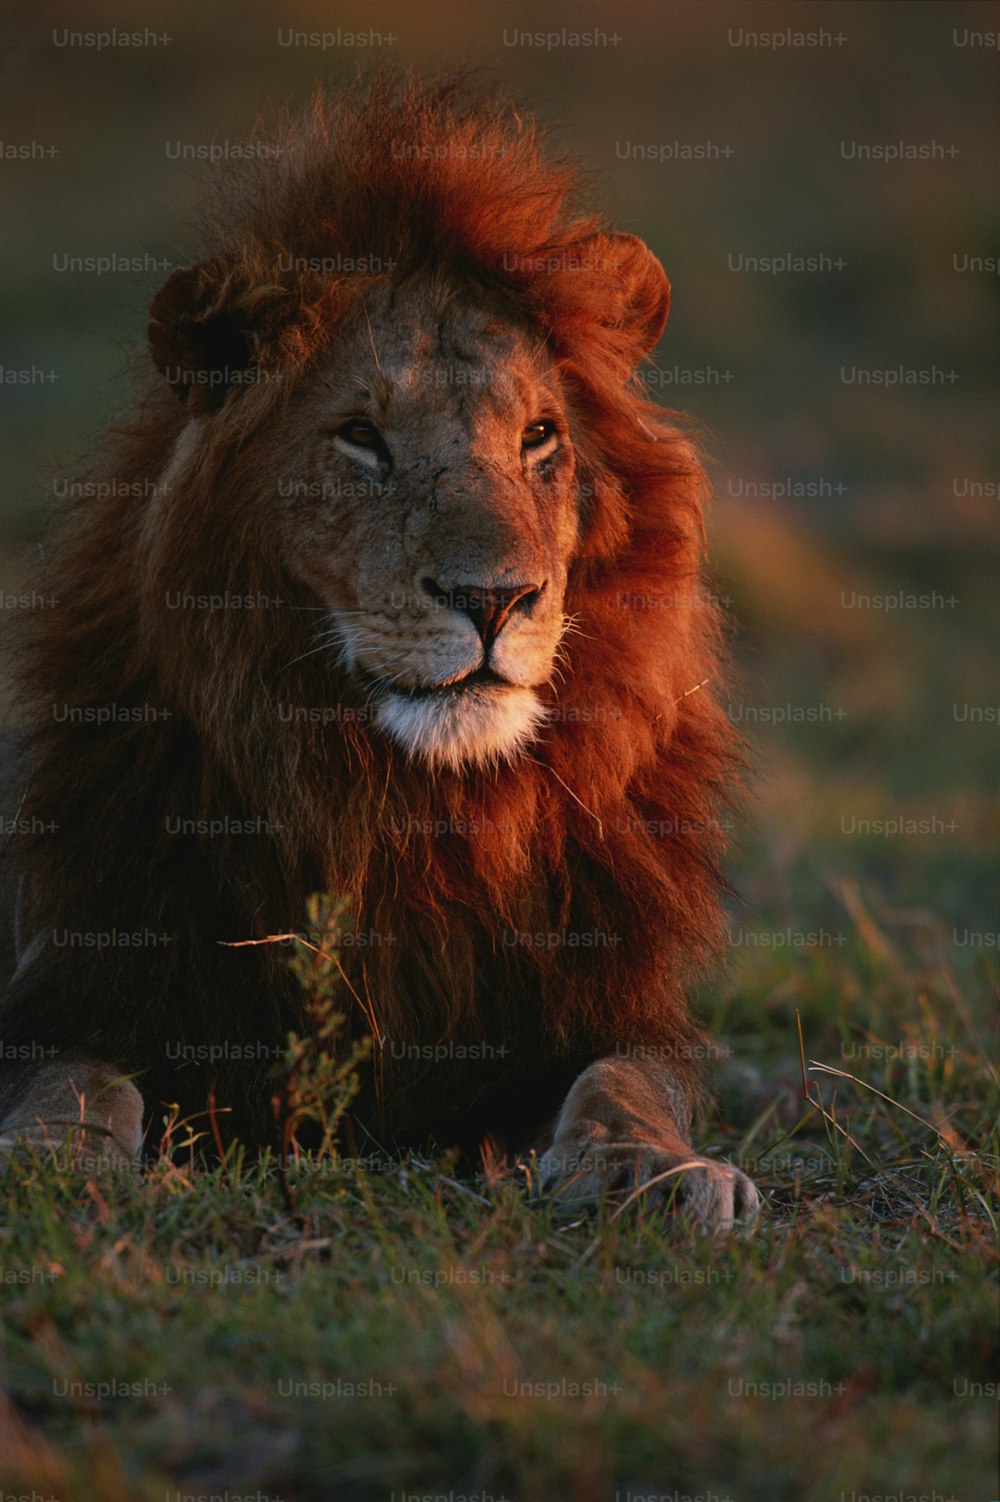 Un primer plano de un león tendido en la hierba